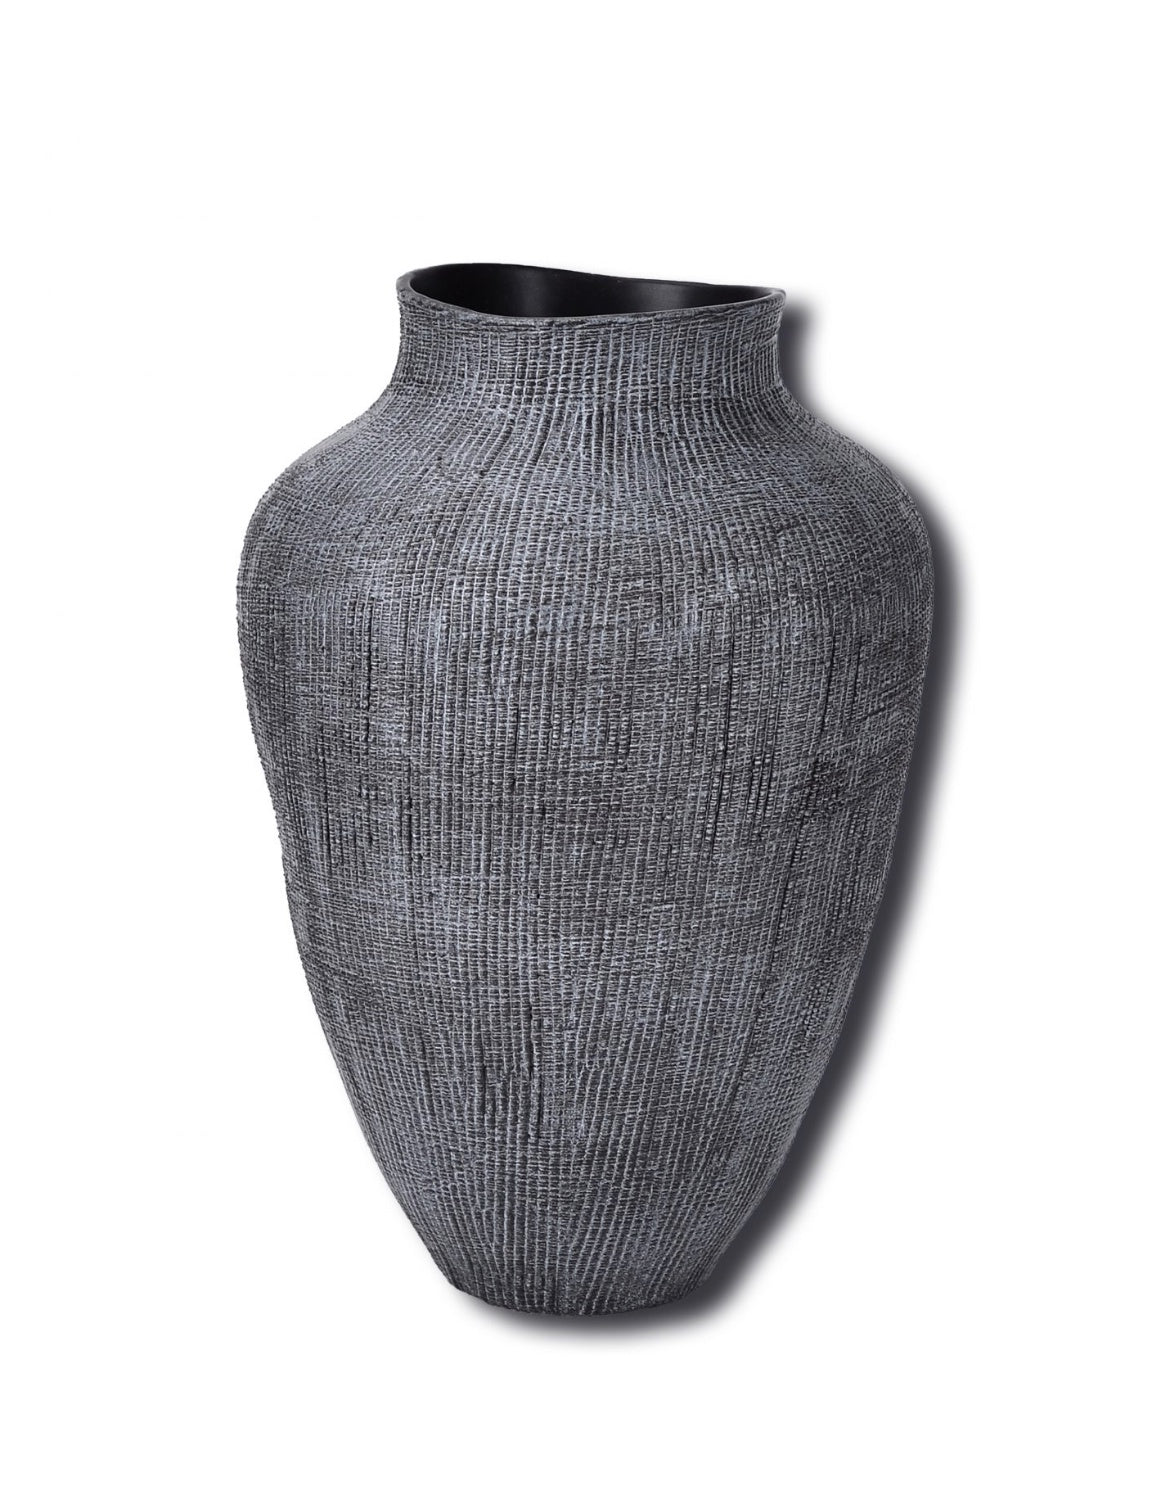 Bella large vase